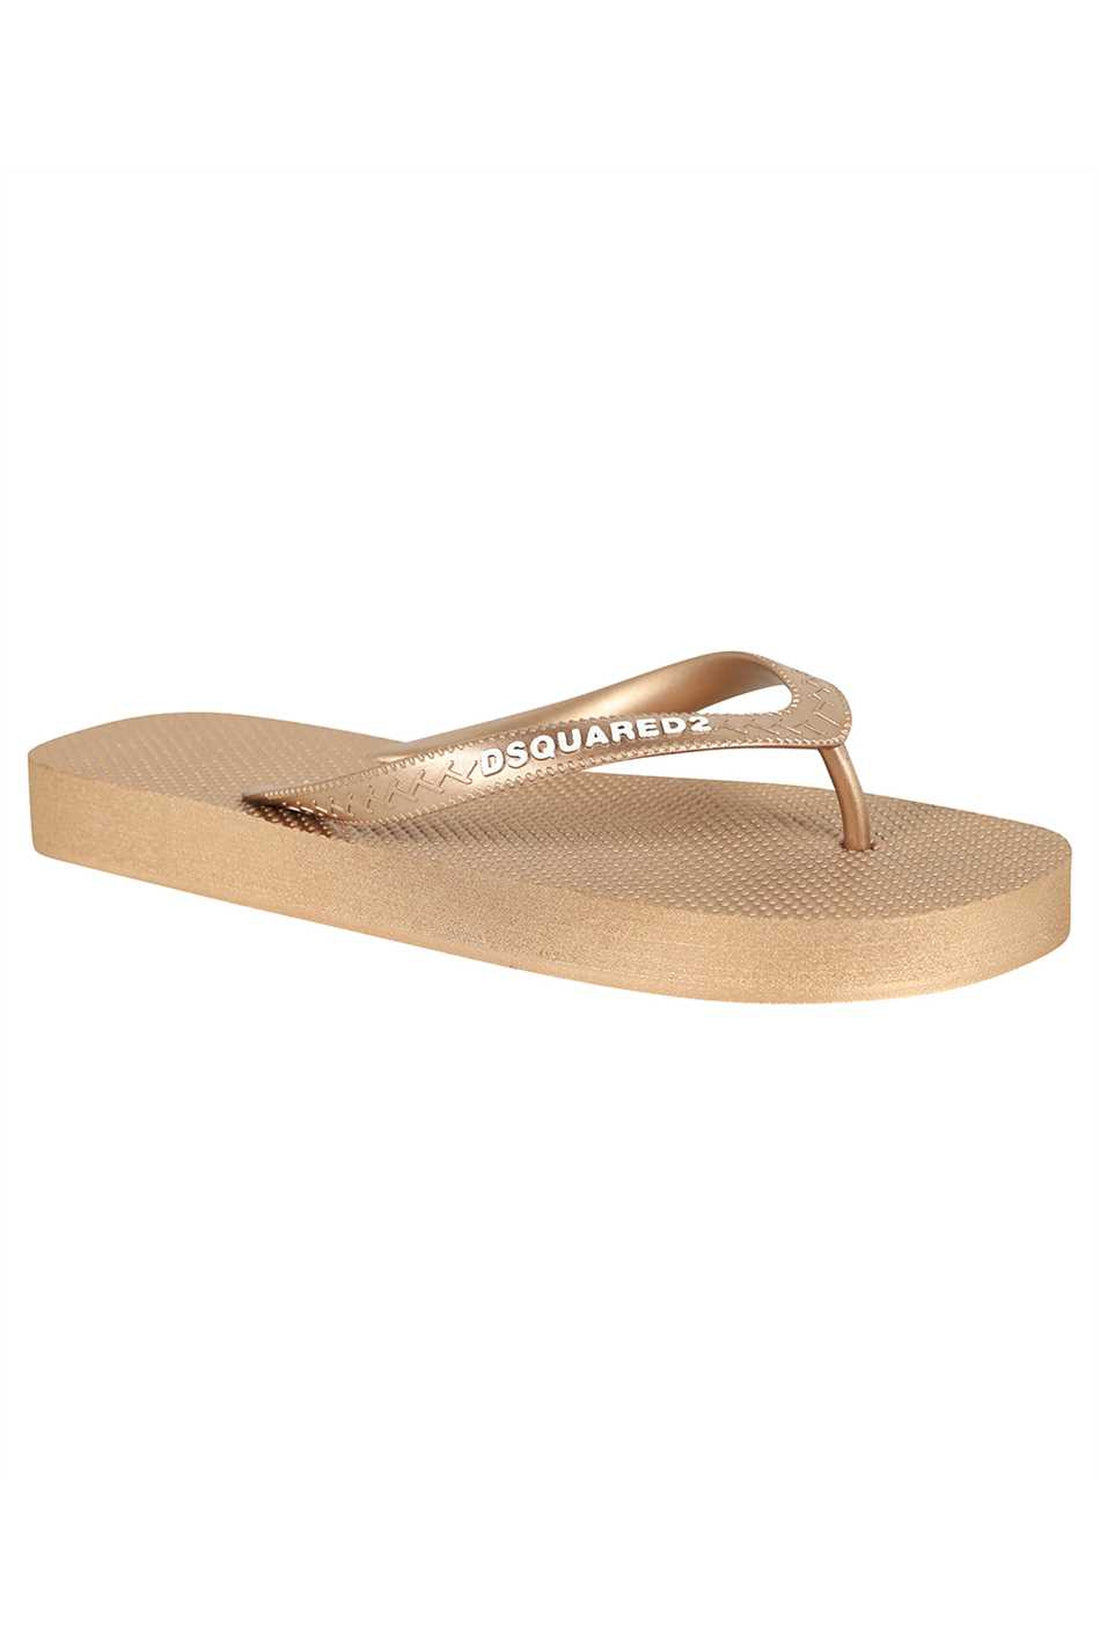 Dsquared2-OUTLET-SALE-Rubber thong-sandals-ARCHIVIST